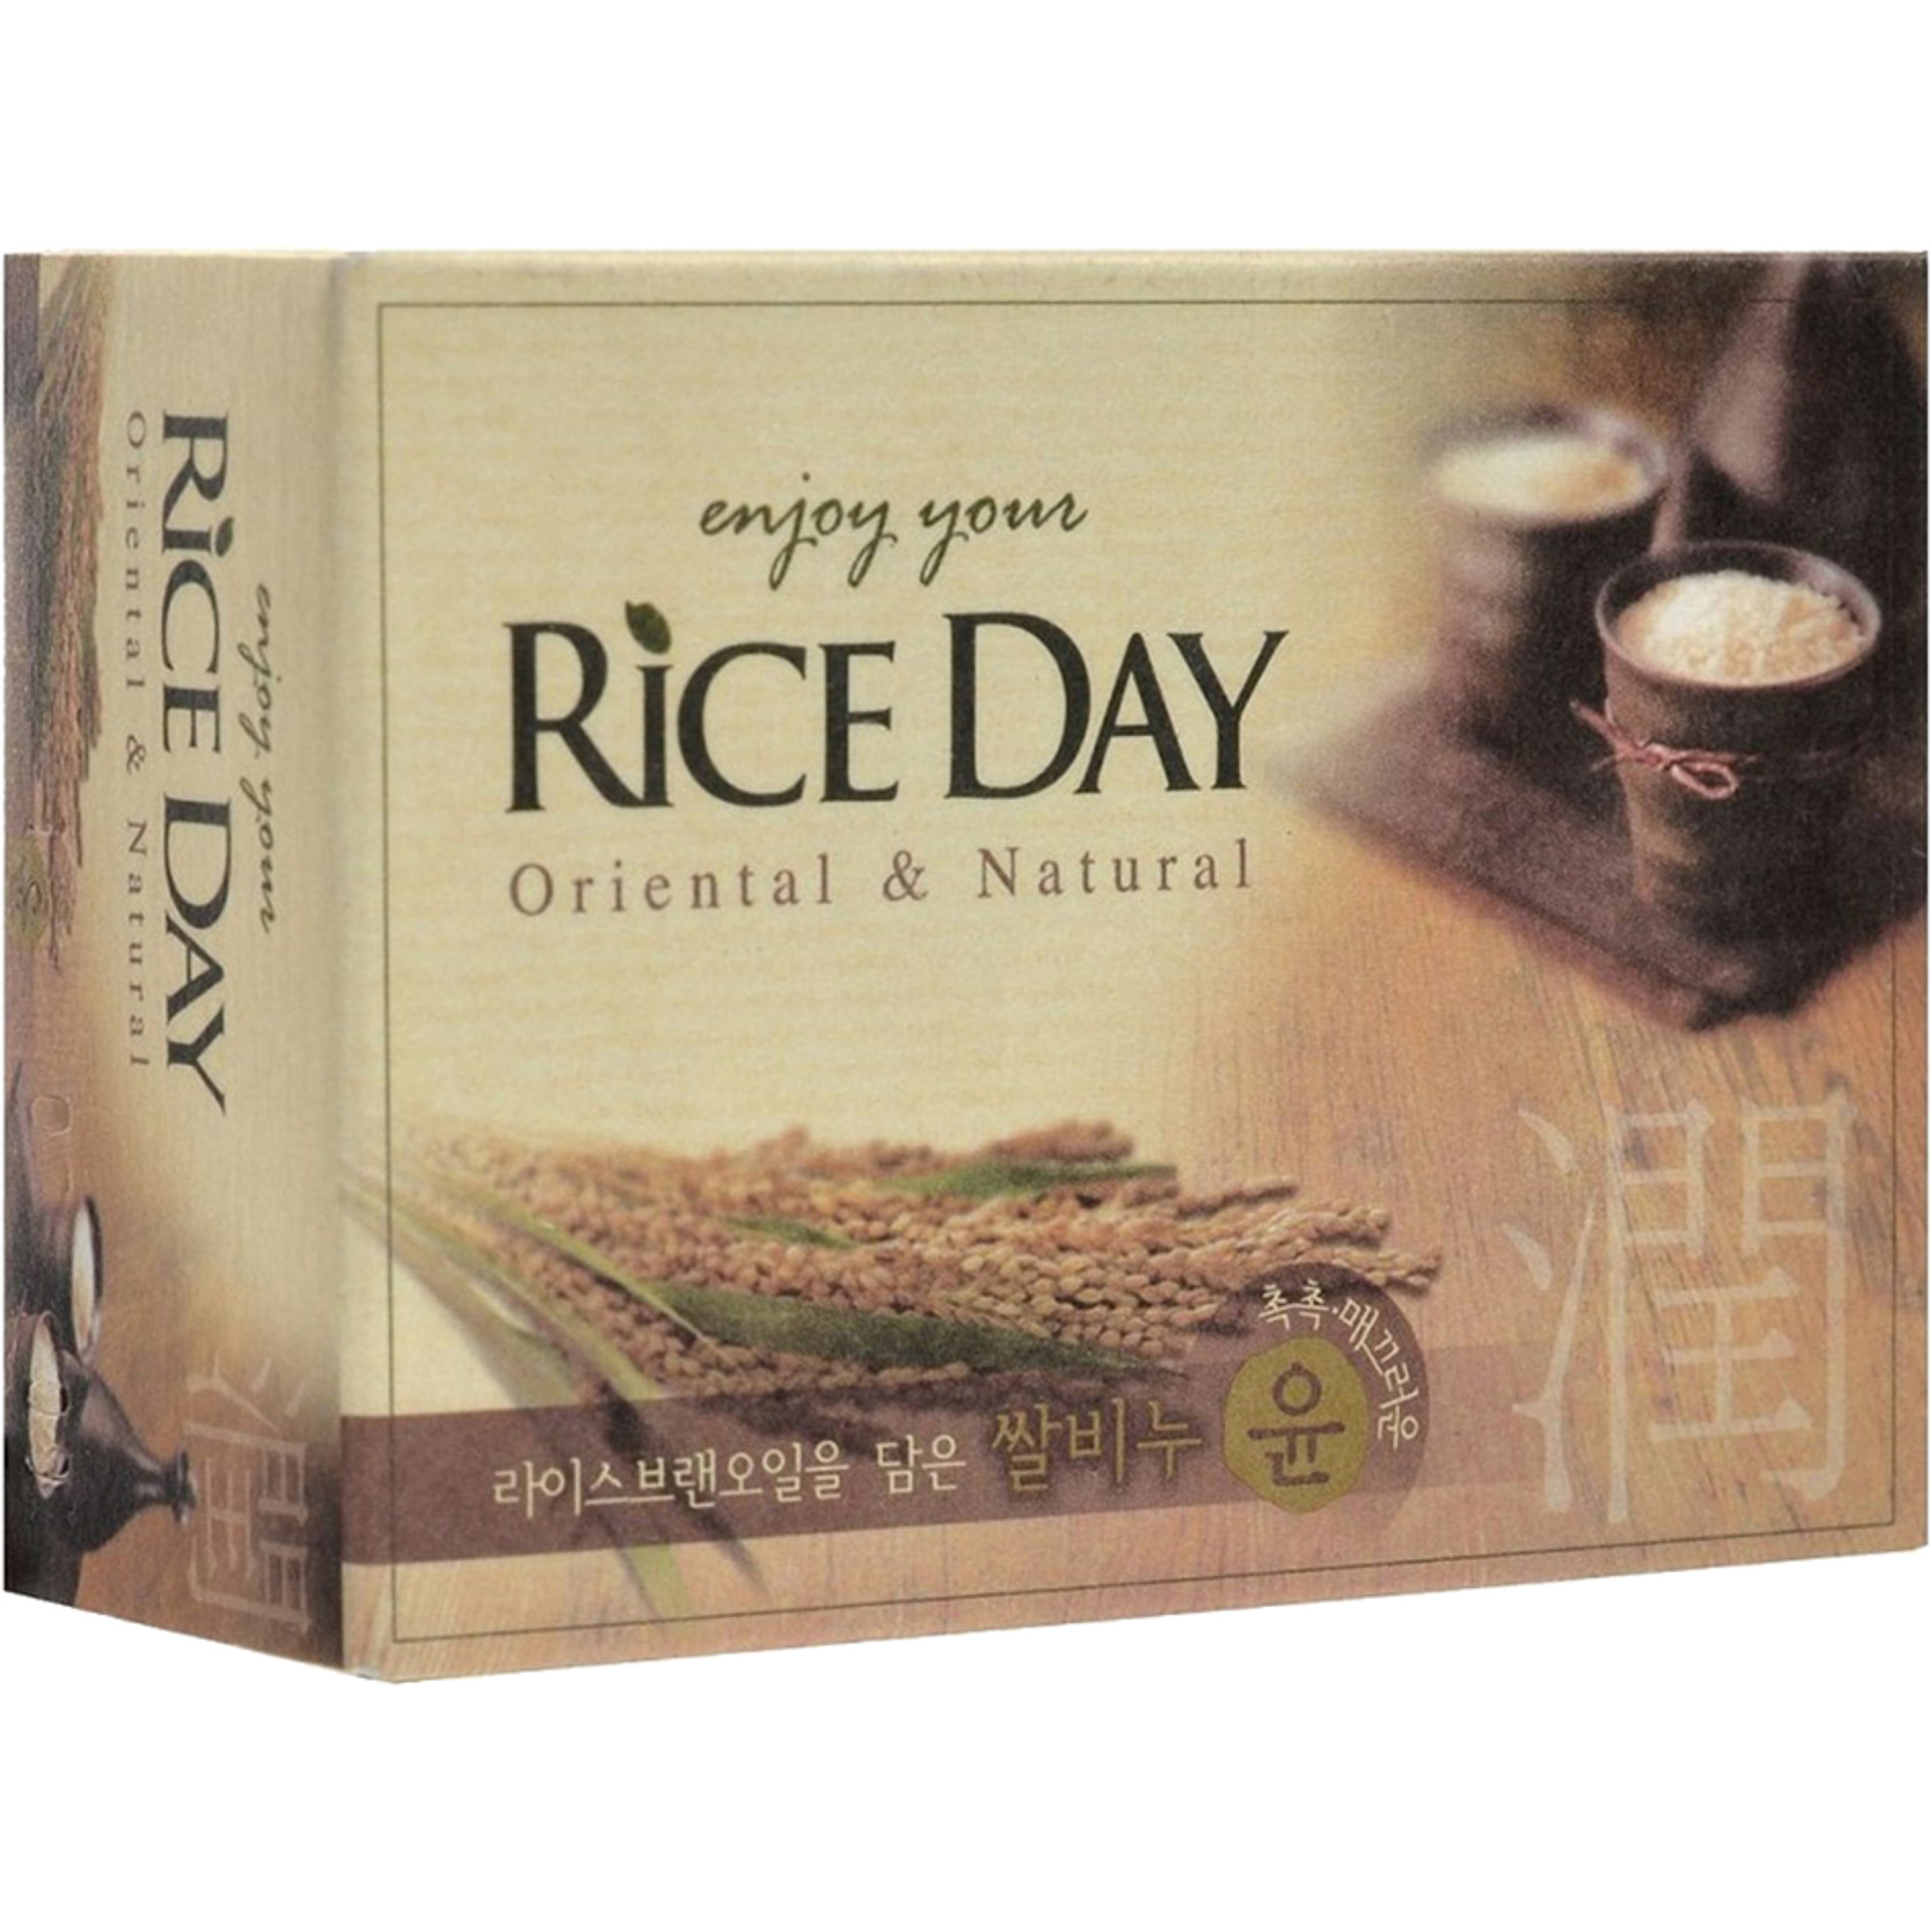 Мыло CJ Lion Rice Day с экстрактом рисовых отрубей 100 г rice day мыло скраб пять злаков 100